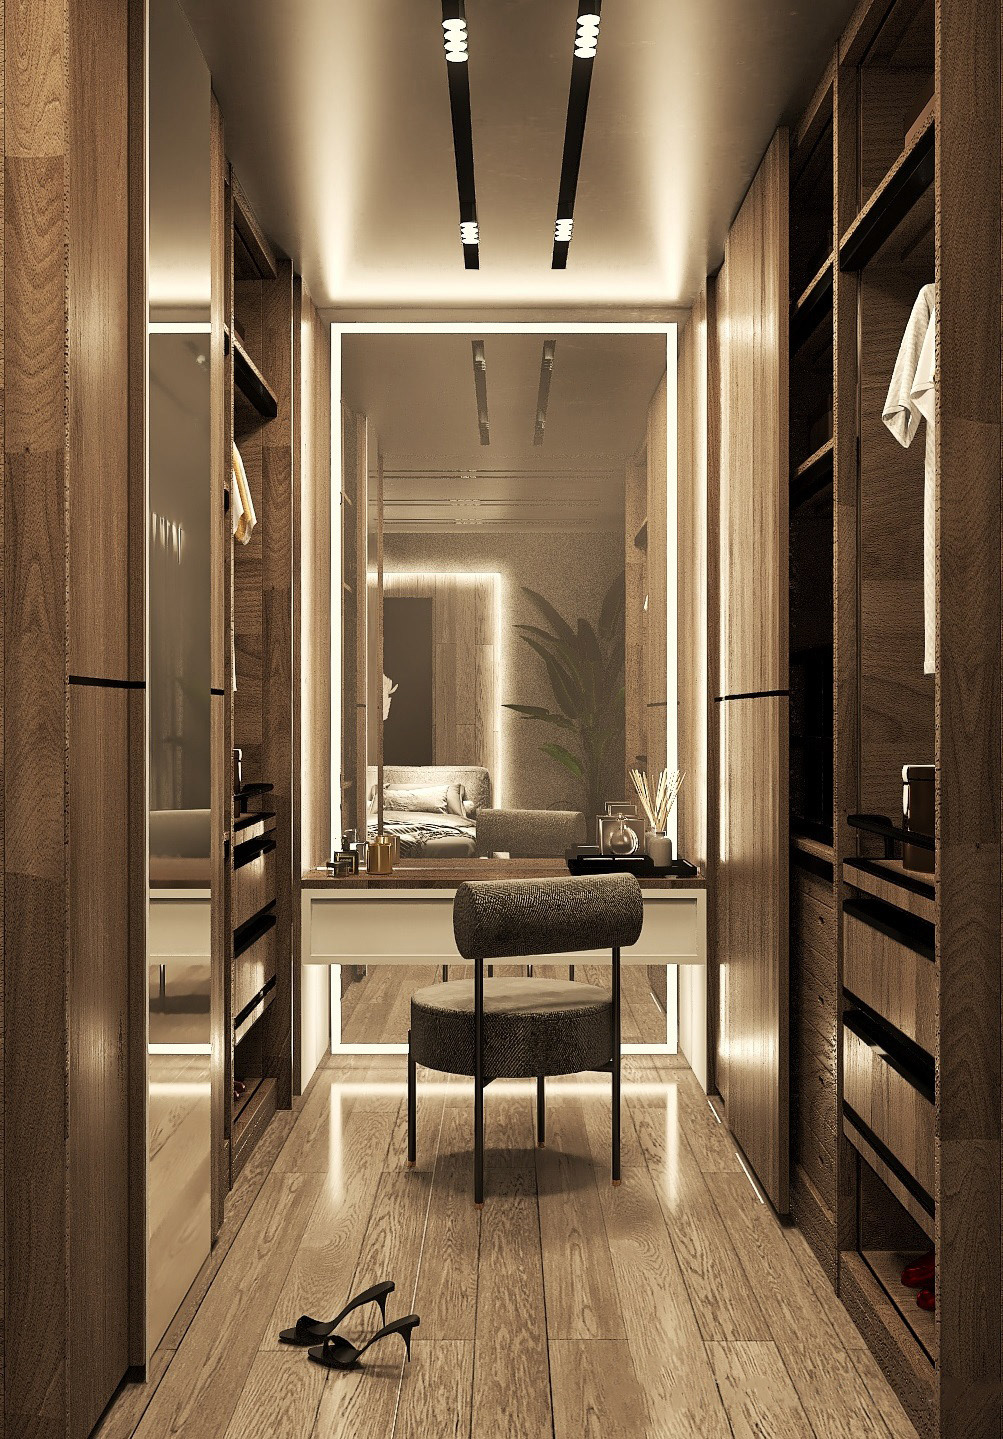 Bedrrom Interior beroomdesign darkbedroom design